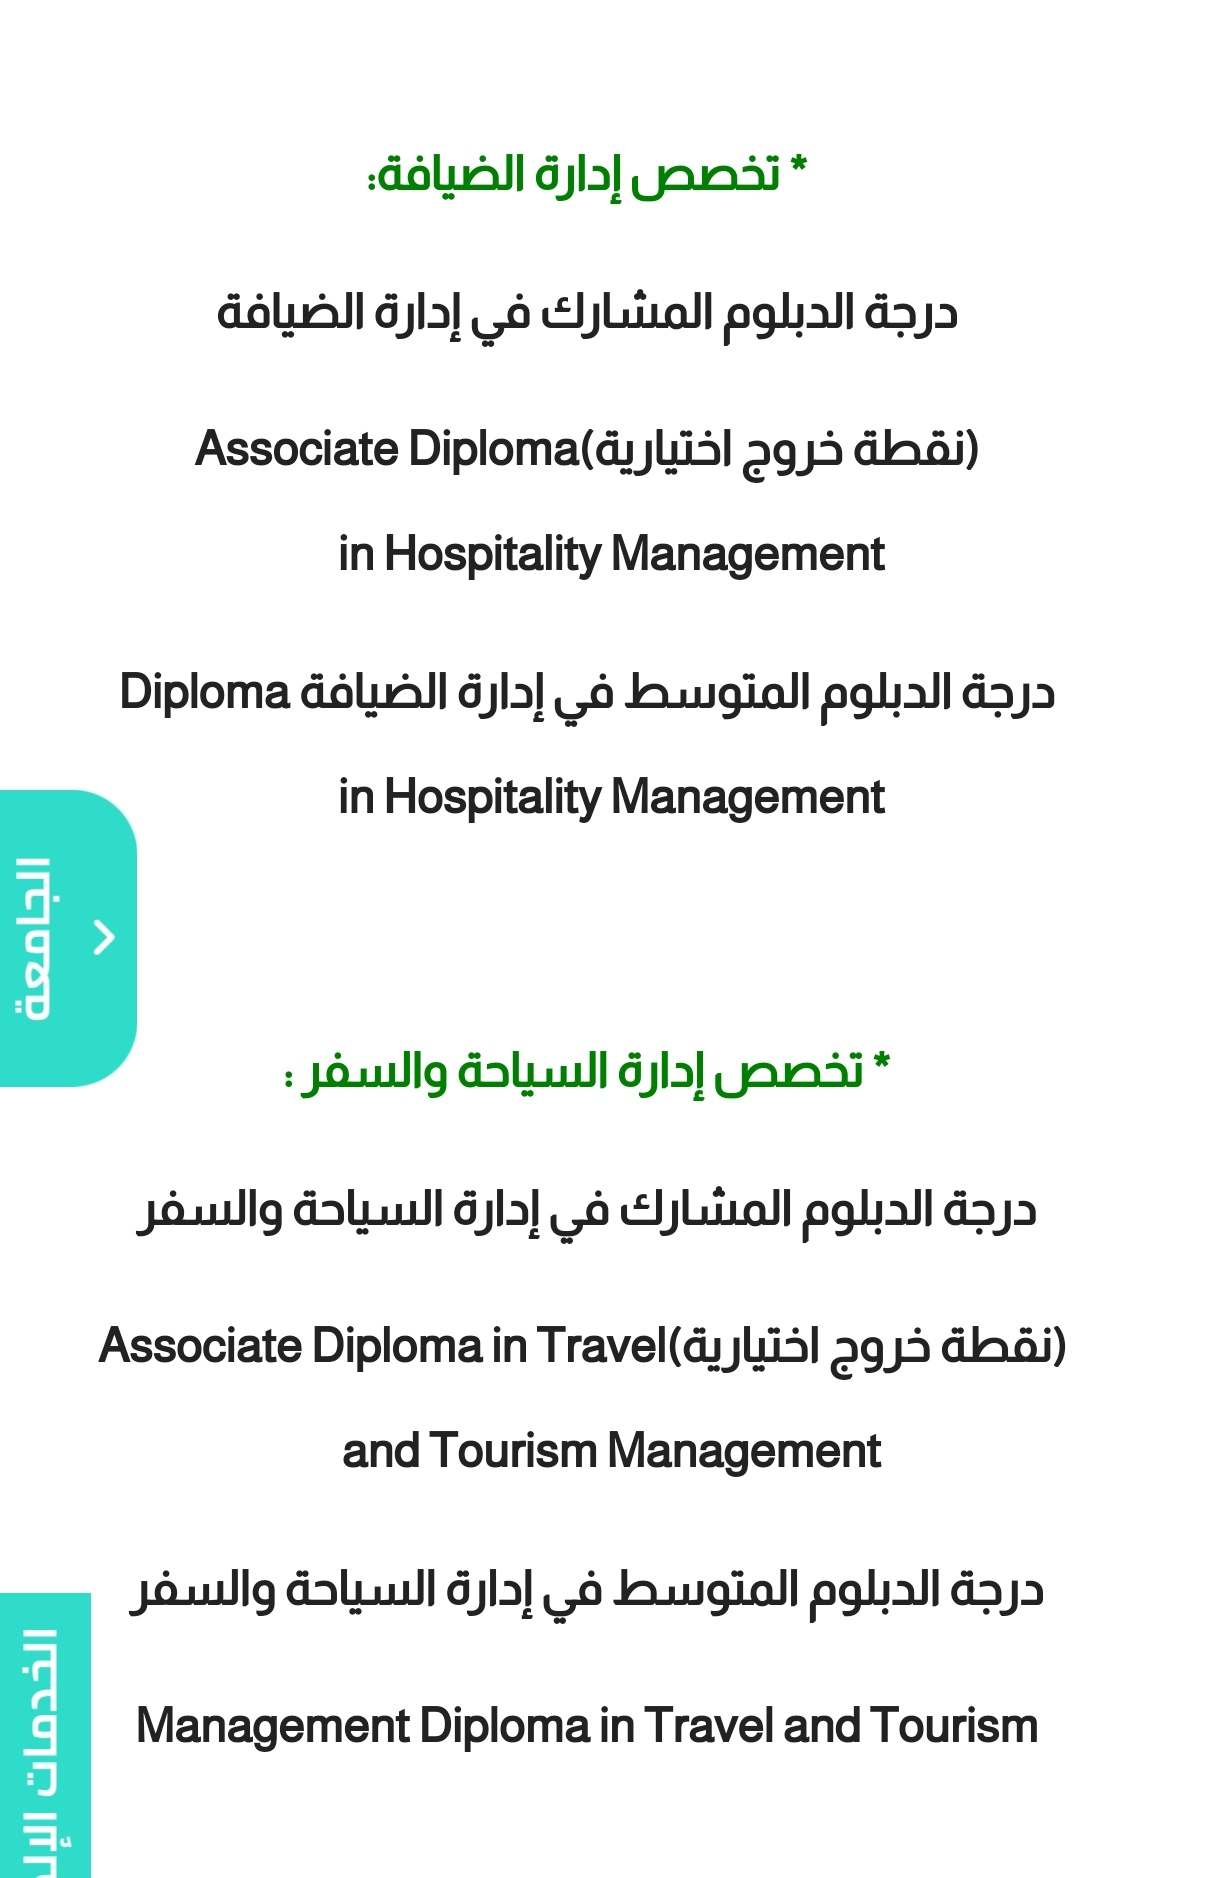 طريقة التسجيل في برنامج الضيافة الجوية جامعة الأميرة نورة 